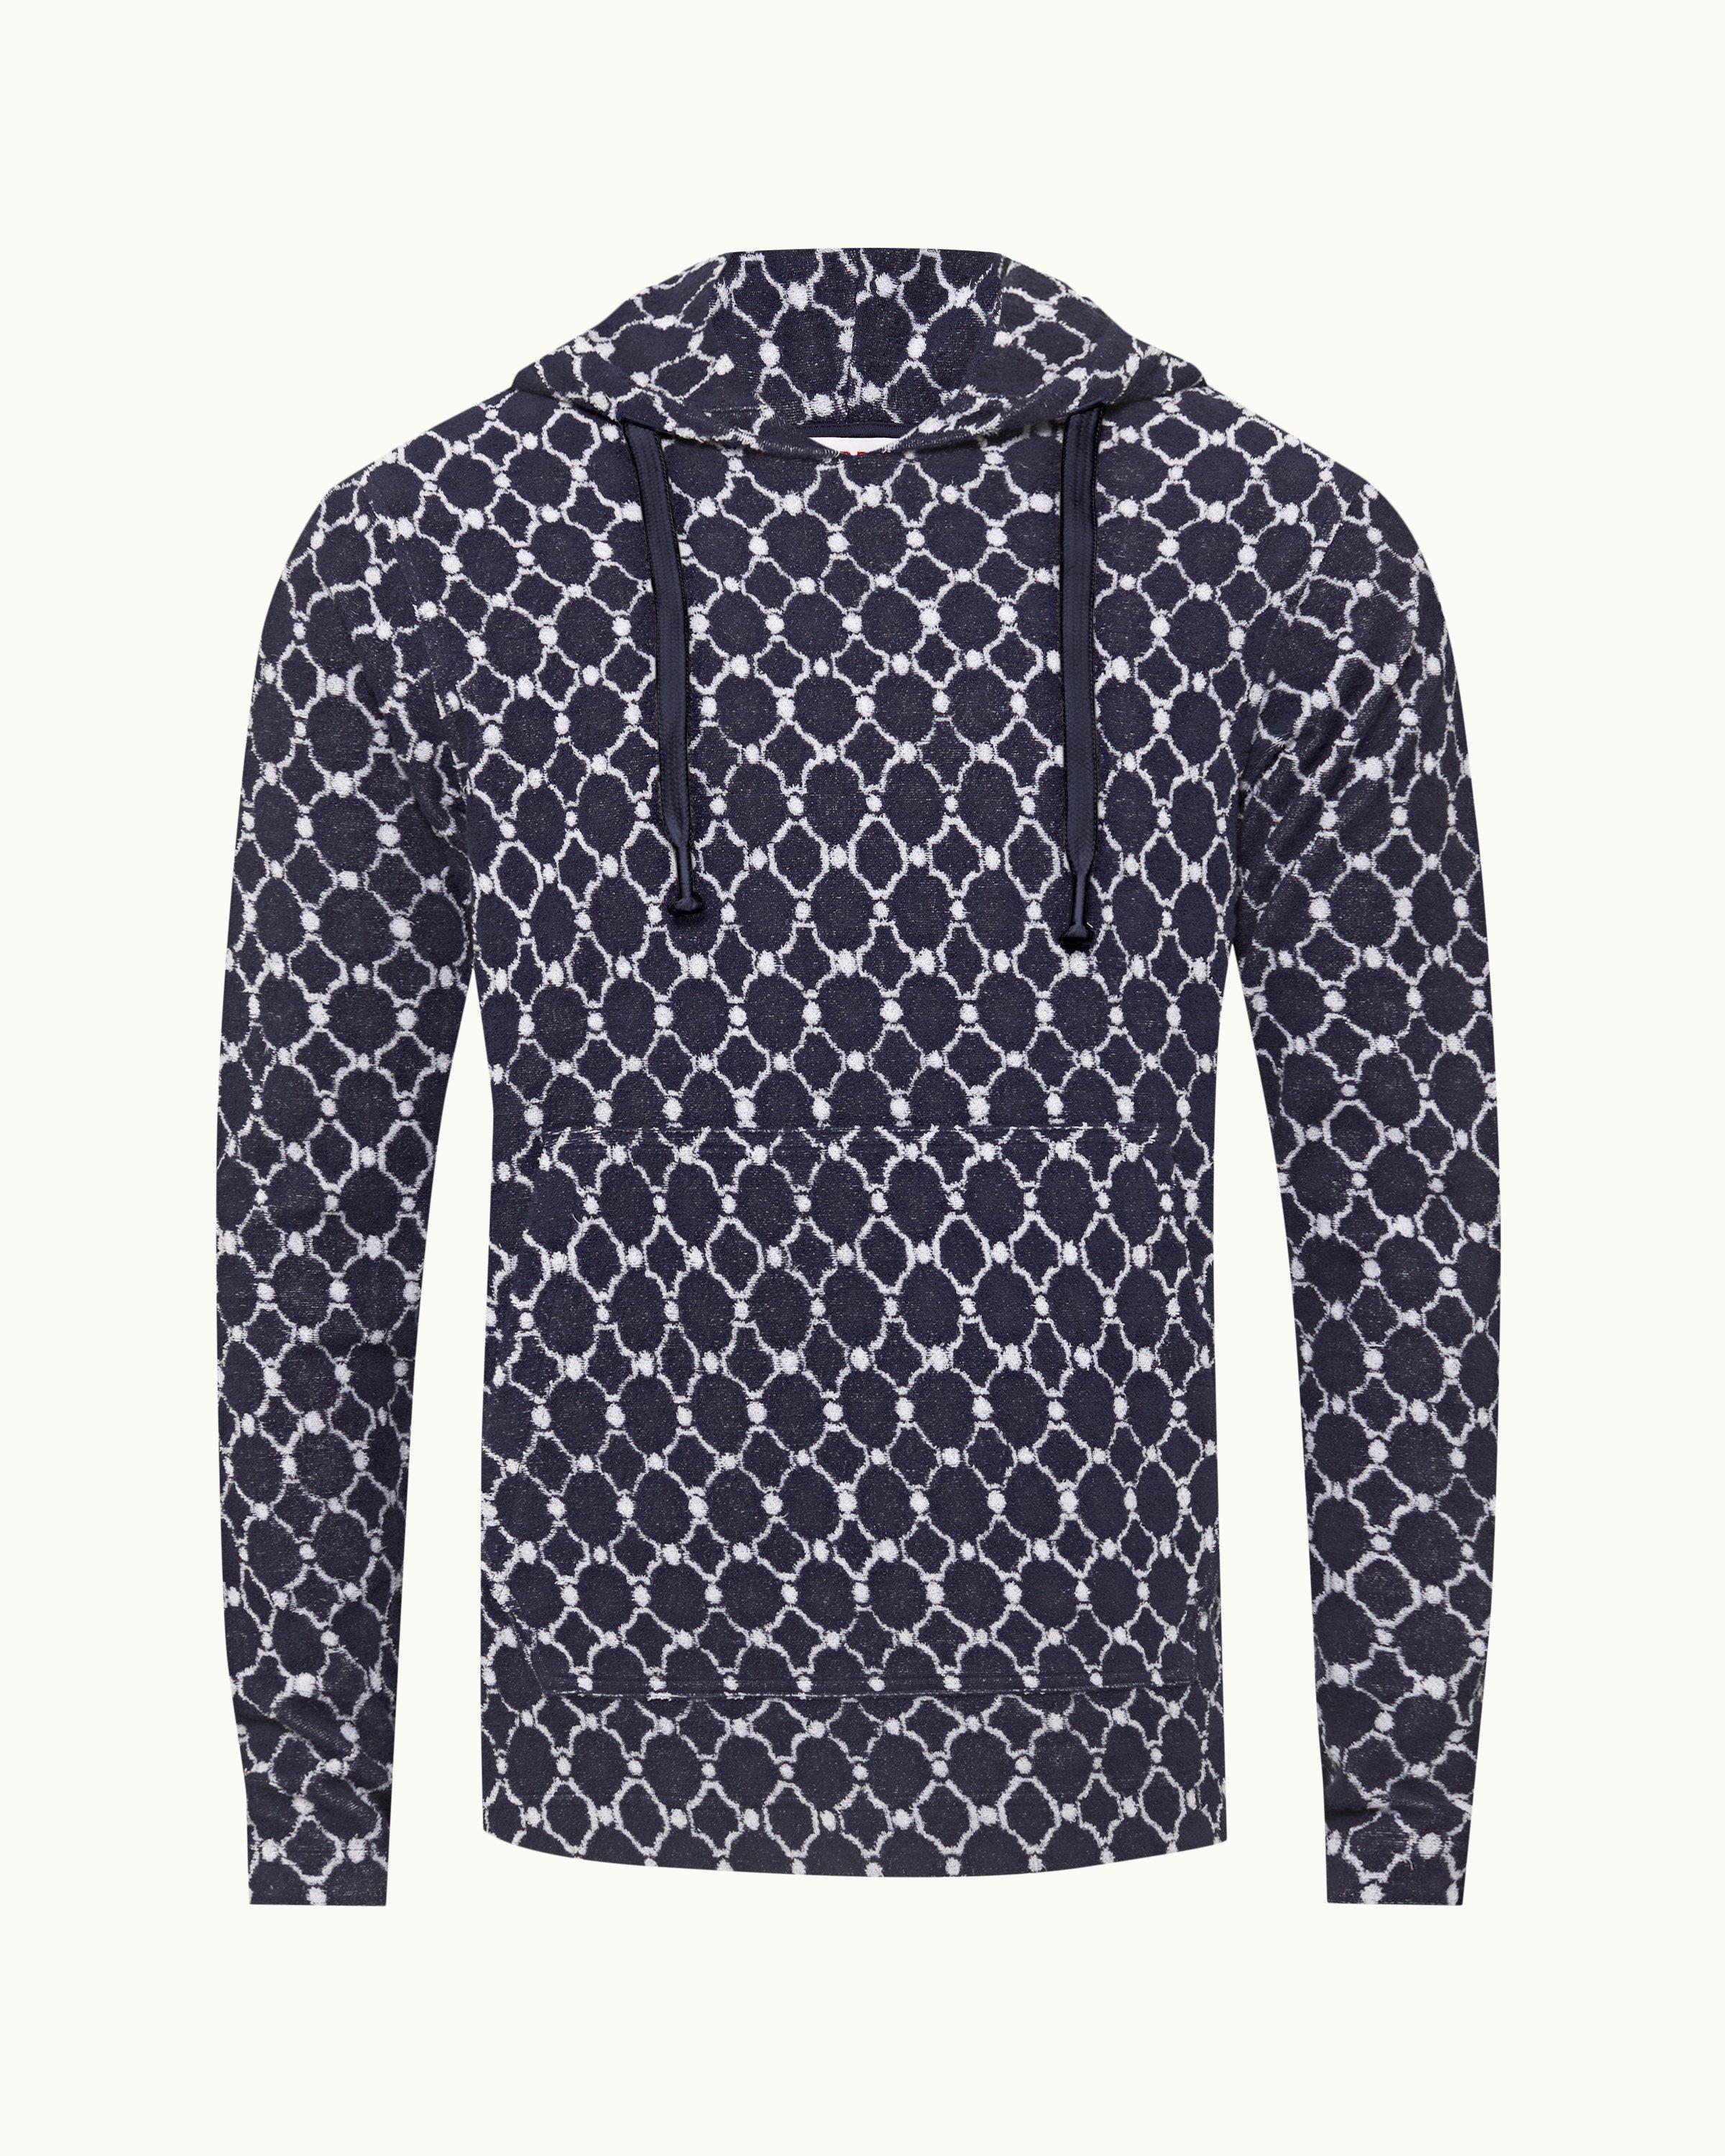 Louis Vuitton Monogram Tile T-Shirt